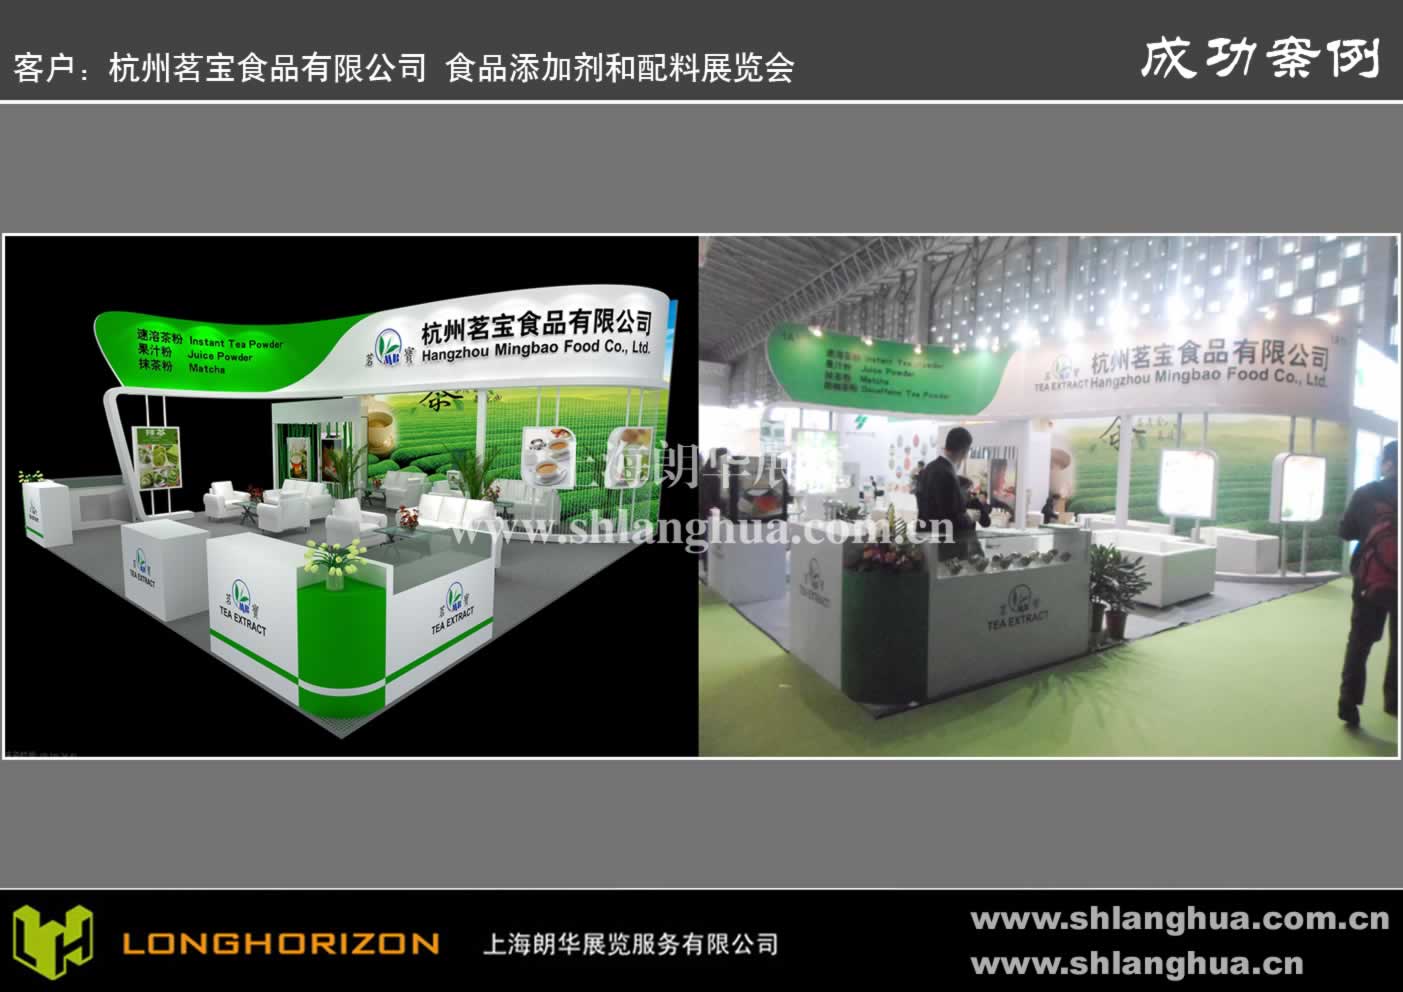 杭州茗宝食品有限公司 食品添加剂和配料展览会FIC